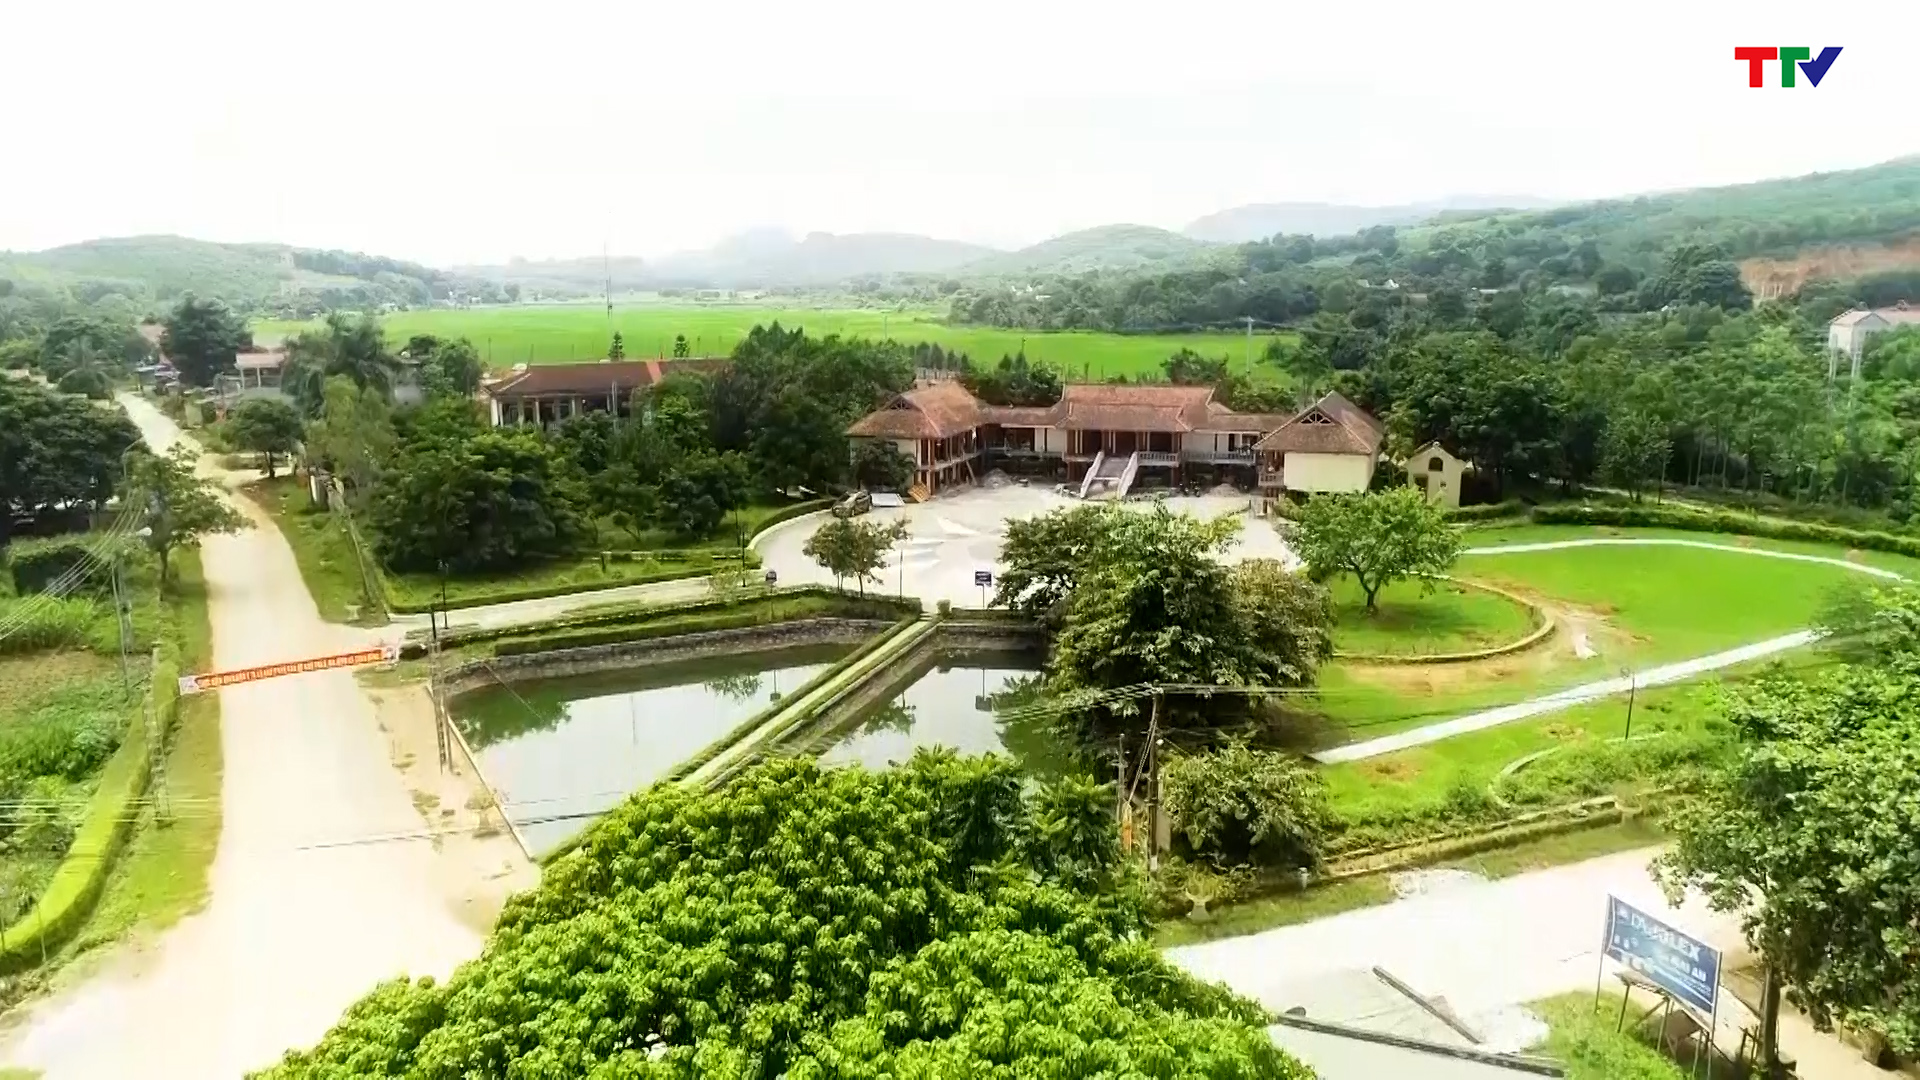 Huyện Thạch Thành bảo tồn và phát huy các giá trị văn hóa lịch sử - Ảnh 2.